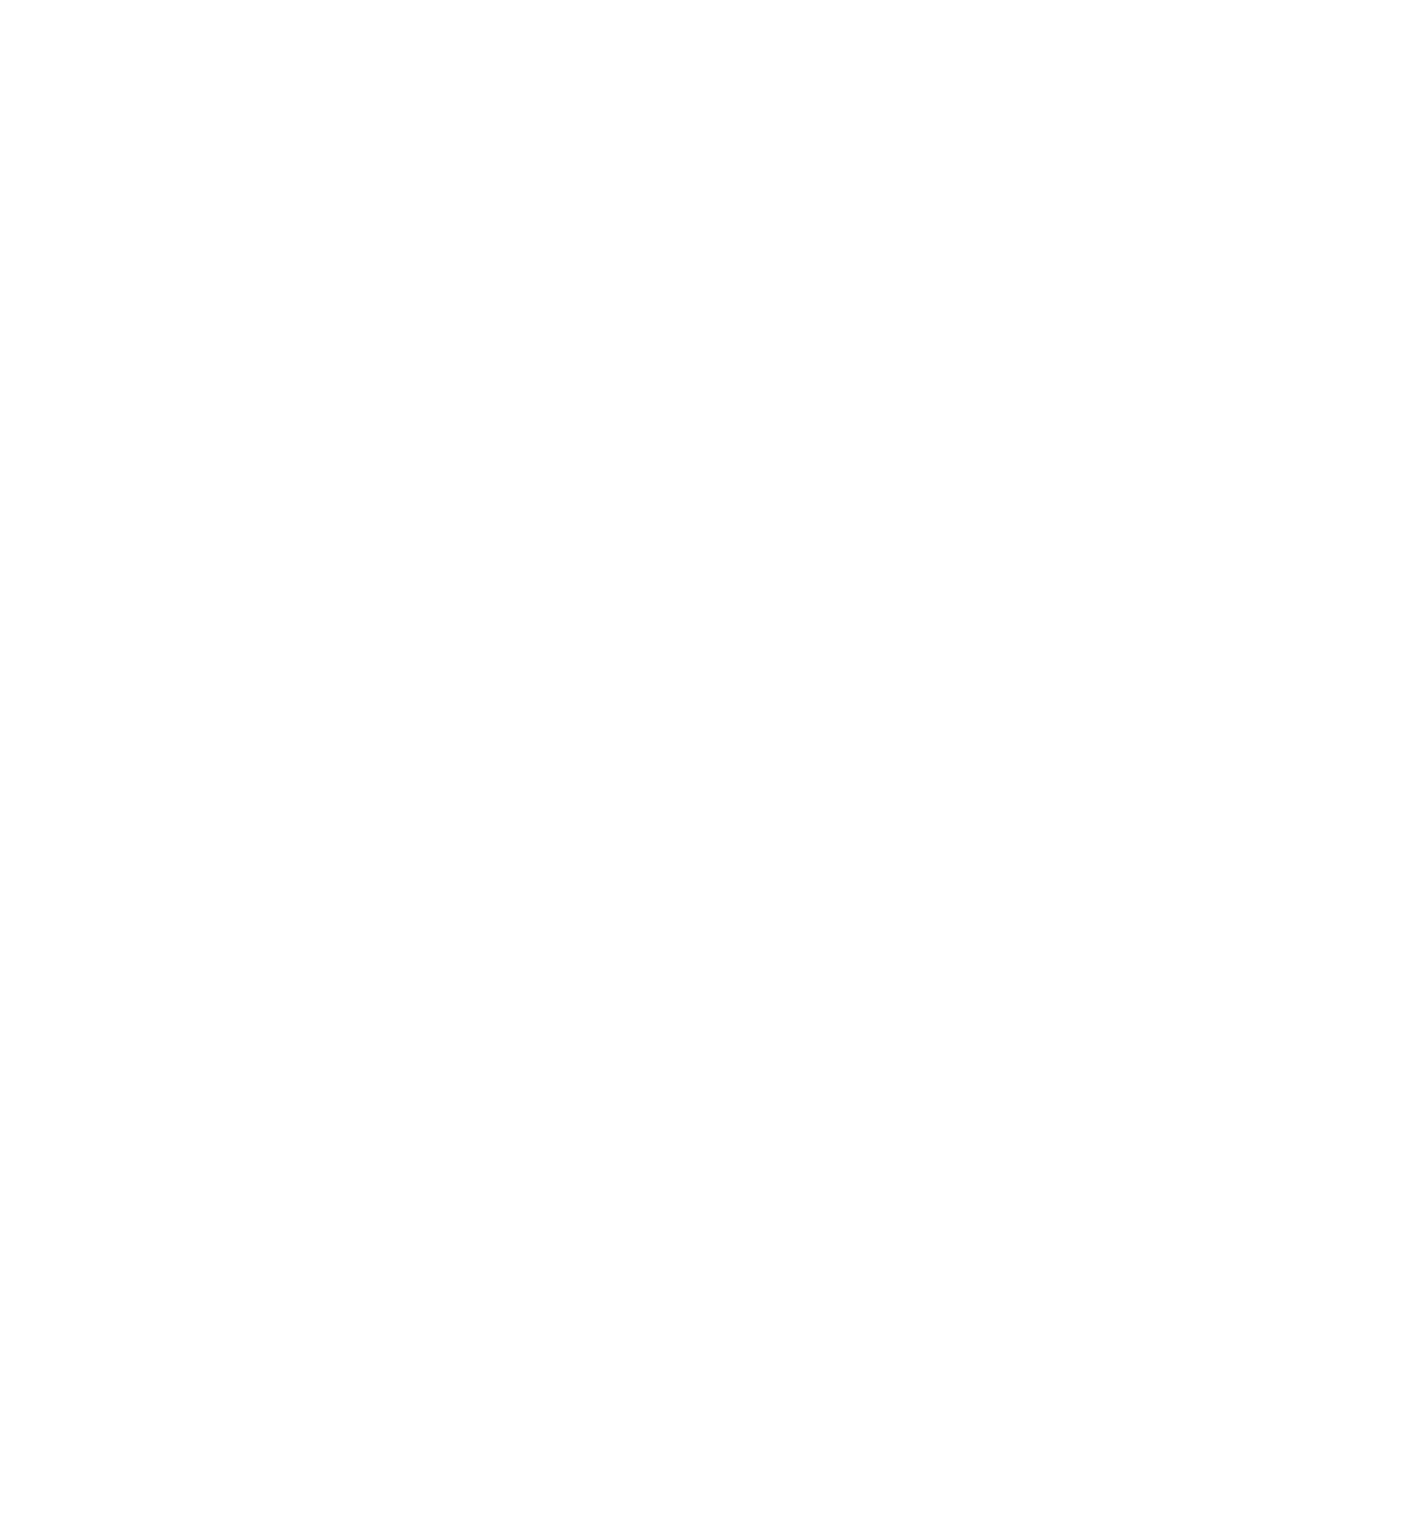 Trimble logo pour fonds sombres (PNG transparent)